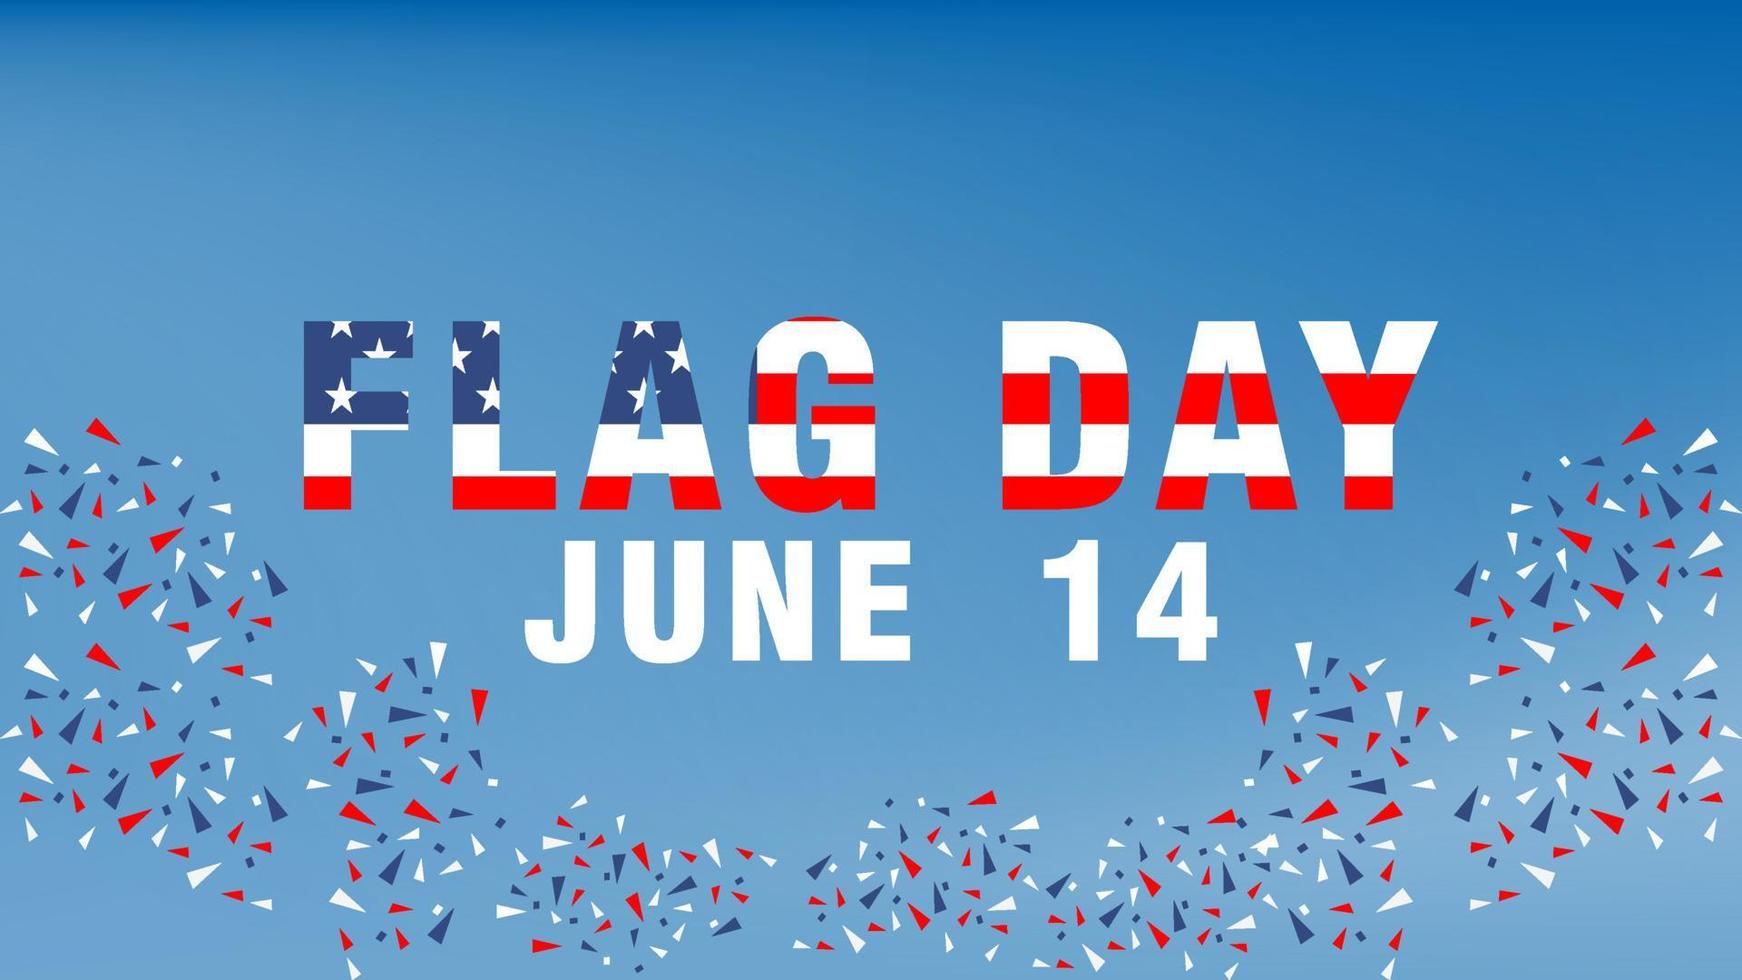 Verenigde Staten nationale vlag dag teksteffect. de vakantie viert jaarlijks 14 juni in de VS. patriottisch stijlontwerp met Amerikaanse vlag. posters, wenskaarten, banners en achtergronden vector